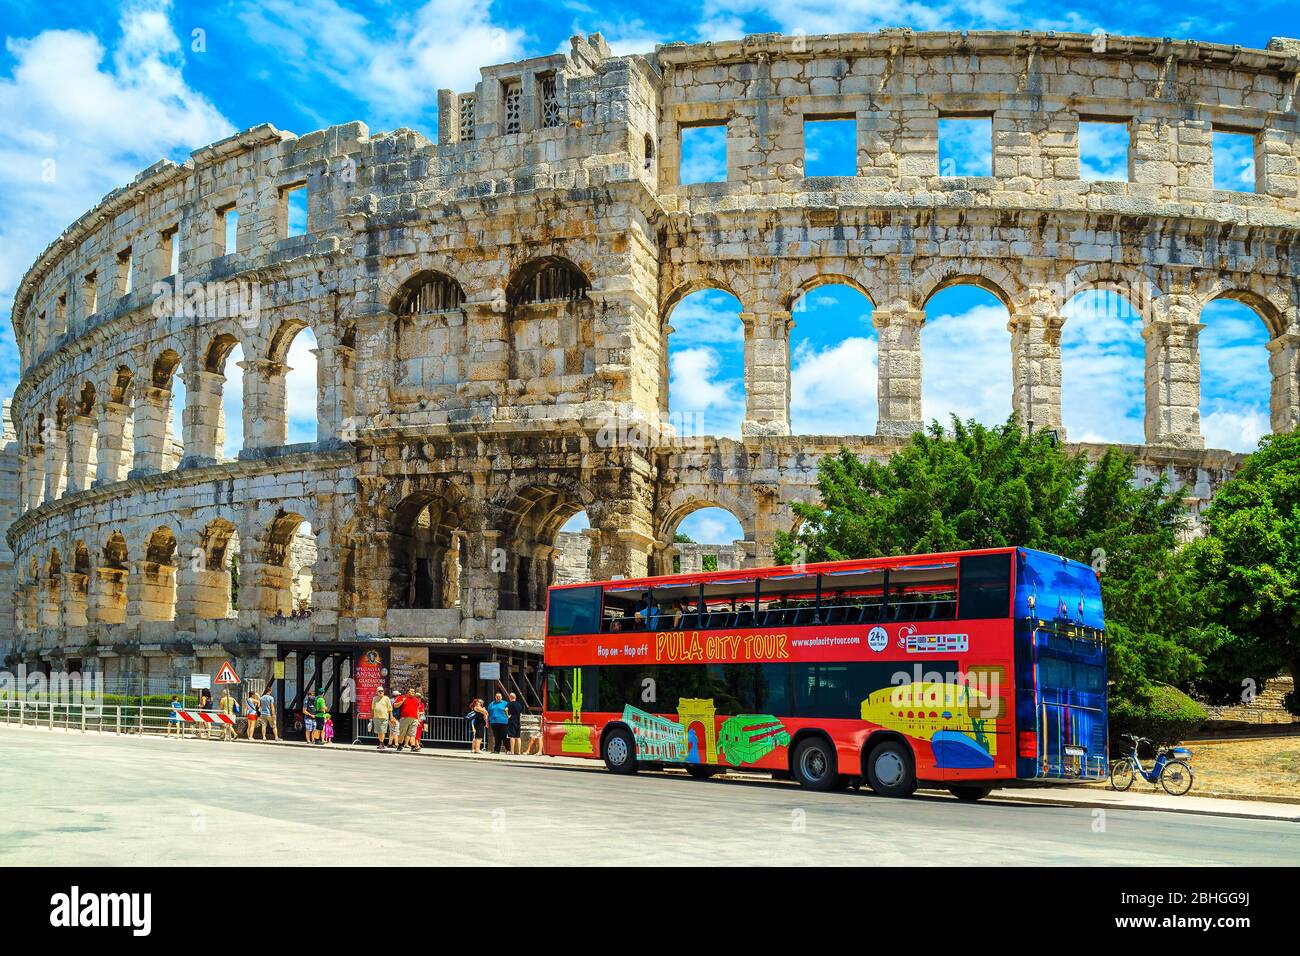 PULA, KROATIEN - 15. JUNI 2015: Beliebtes Reiseziel mit dem berühmten römischen Amphitheater (Arena) Gebäude. Bunte Sightseeing-Bus mit Touristen i Stockfoto